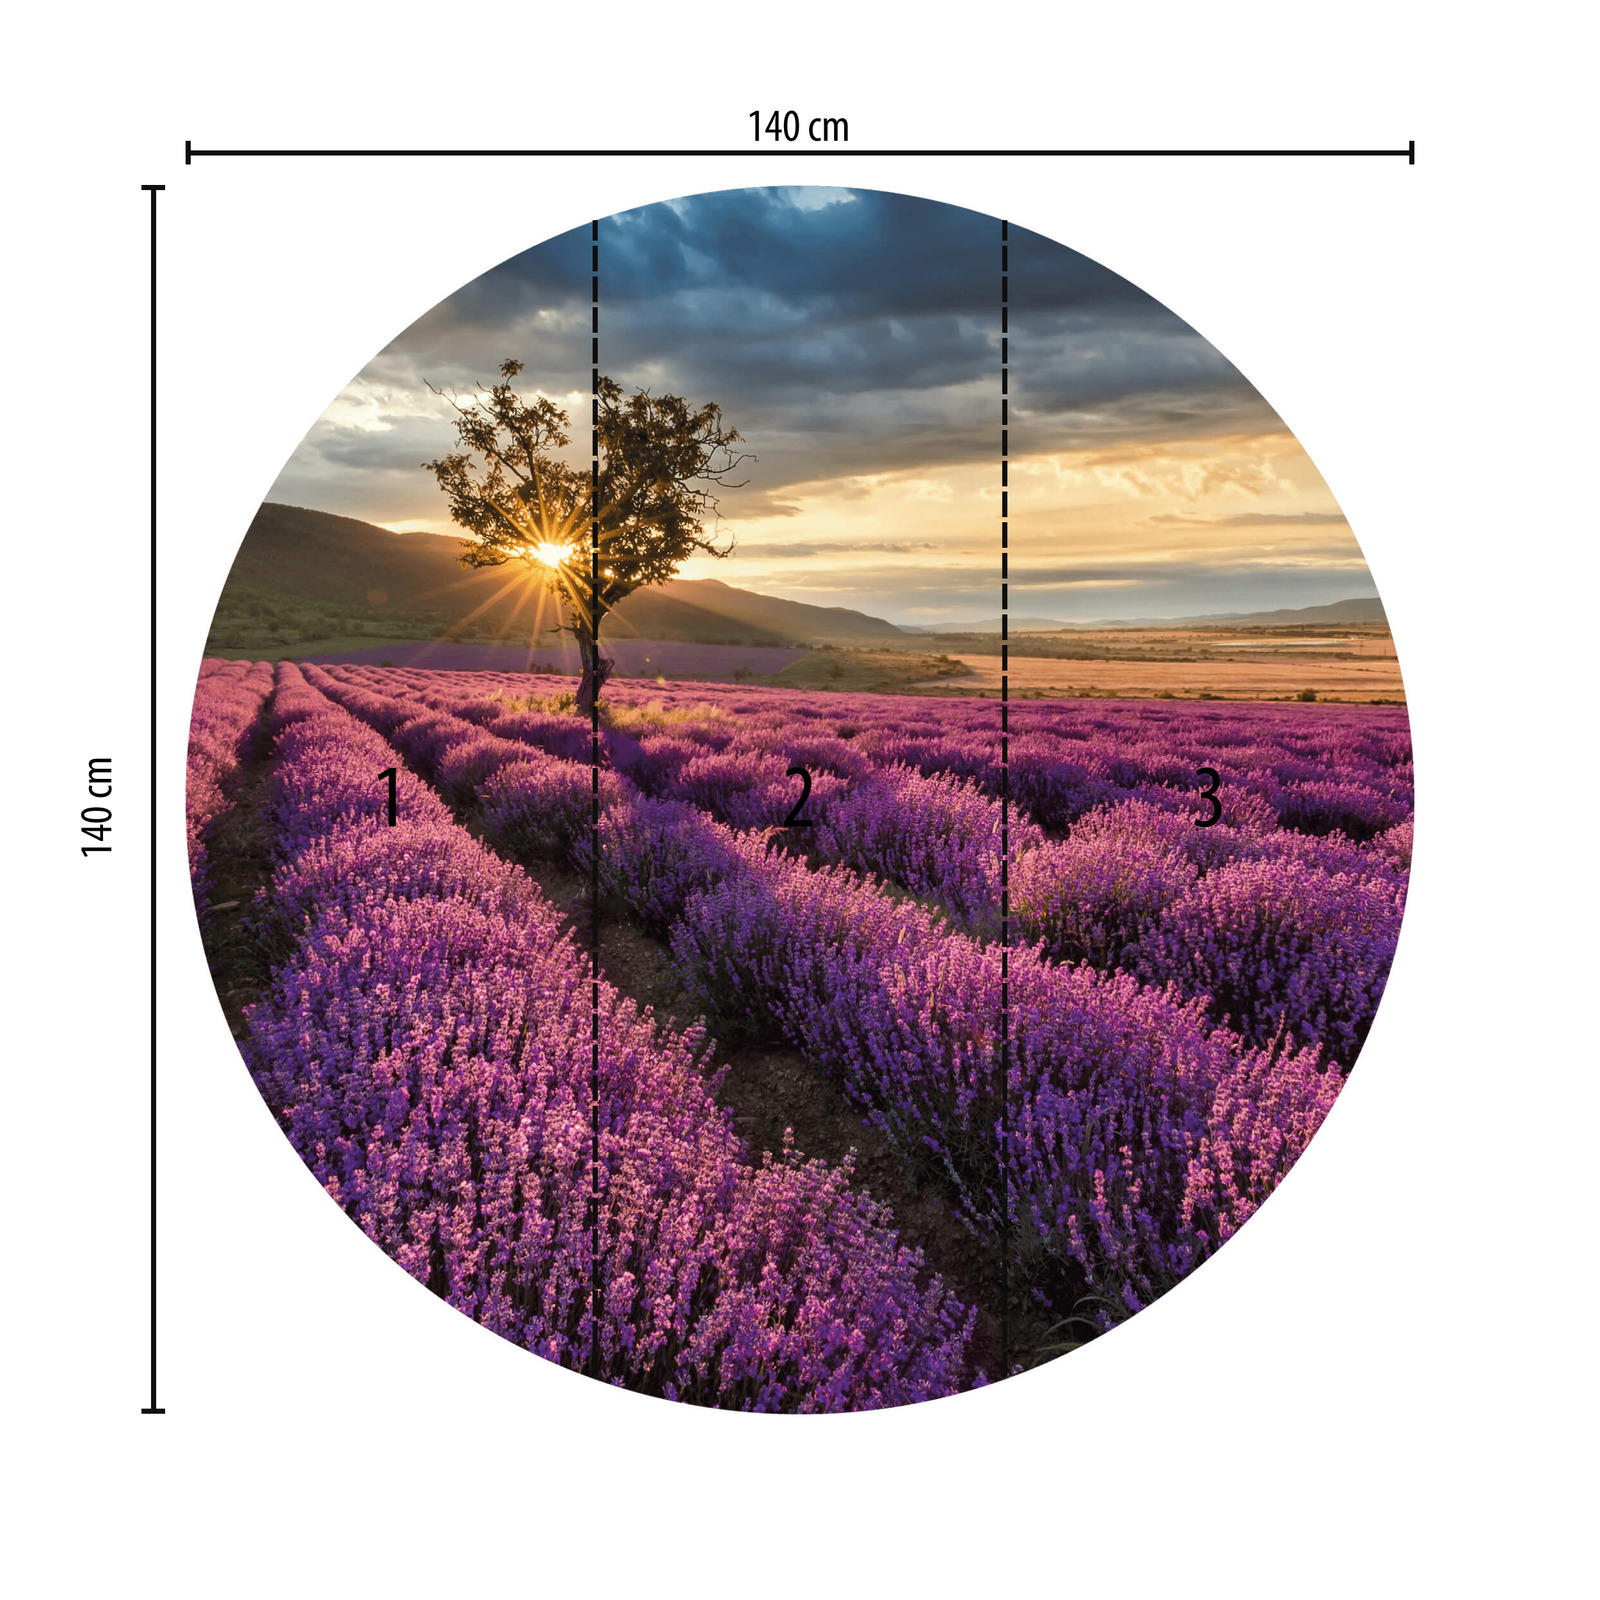             Fototapete rund Lavendelfeld in der Provence
        